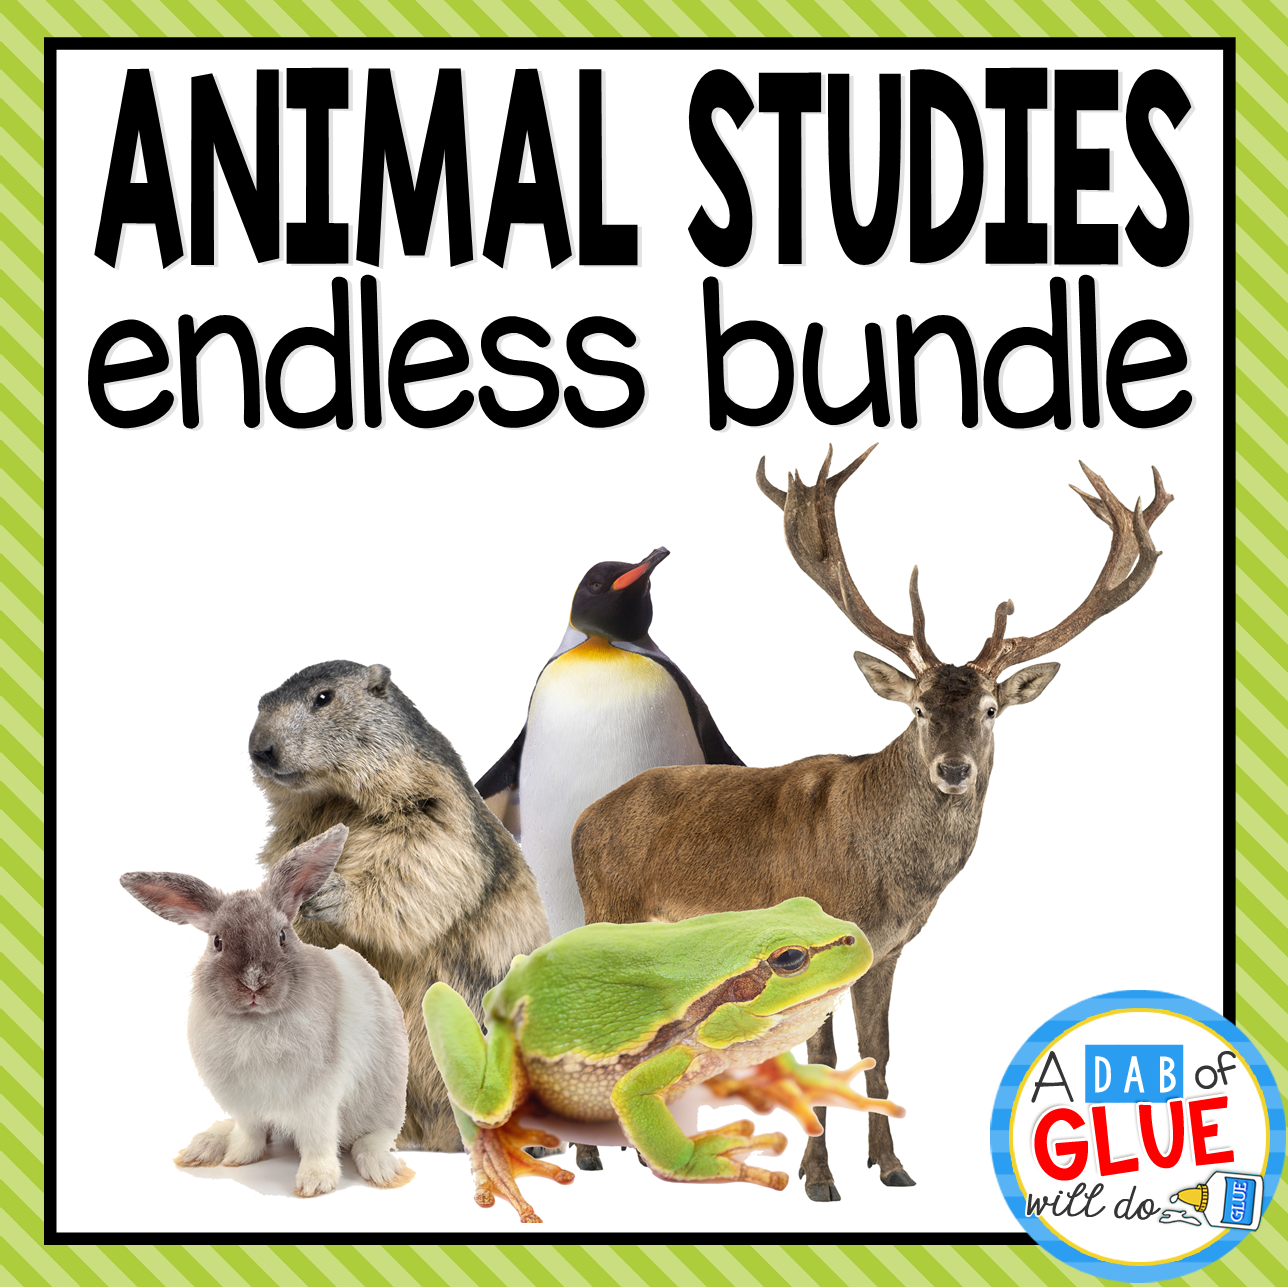 Animal Studies endless-bundle